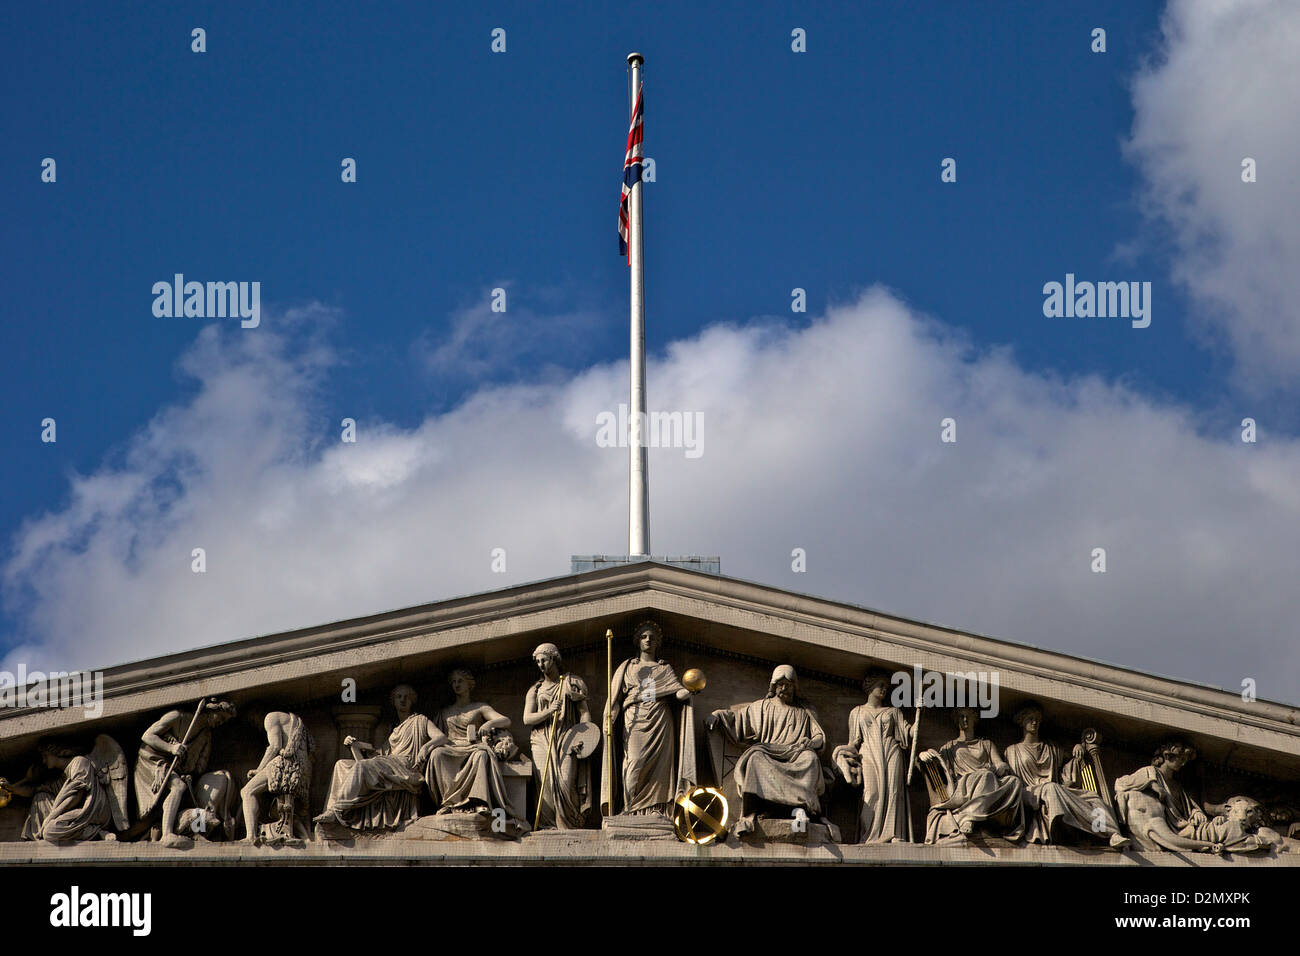 Klassische Fassade des British Museum, London, England, UK, GB, Großbritannien Stockfoto